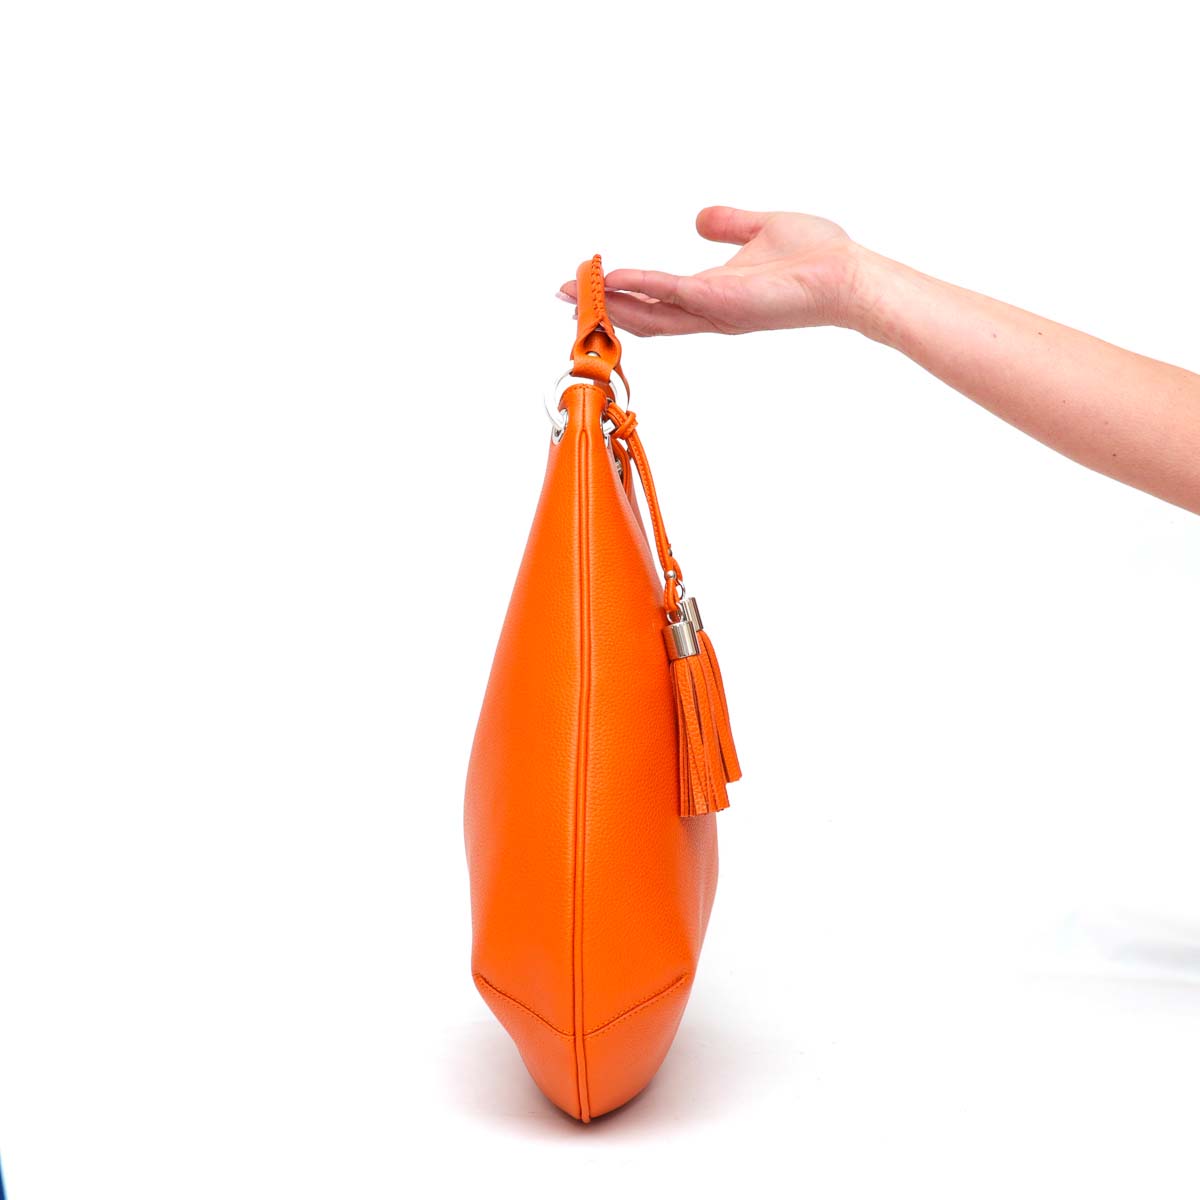 Lou - borsa da donna in pelle arancio, modello a spalla con tracolla by Pianigiani